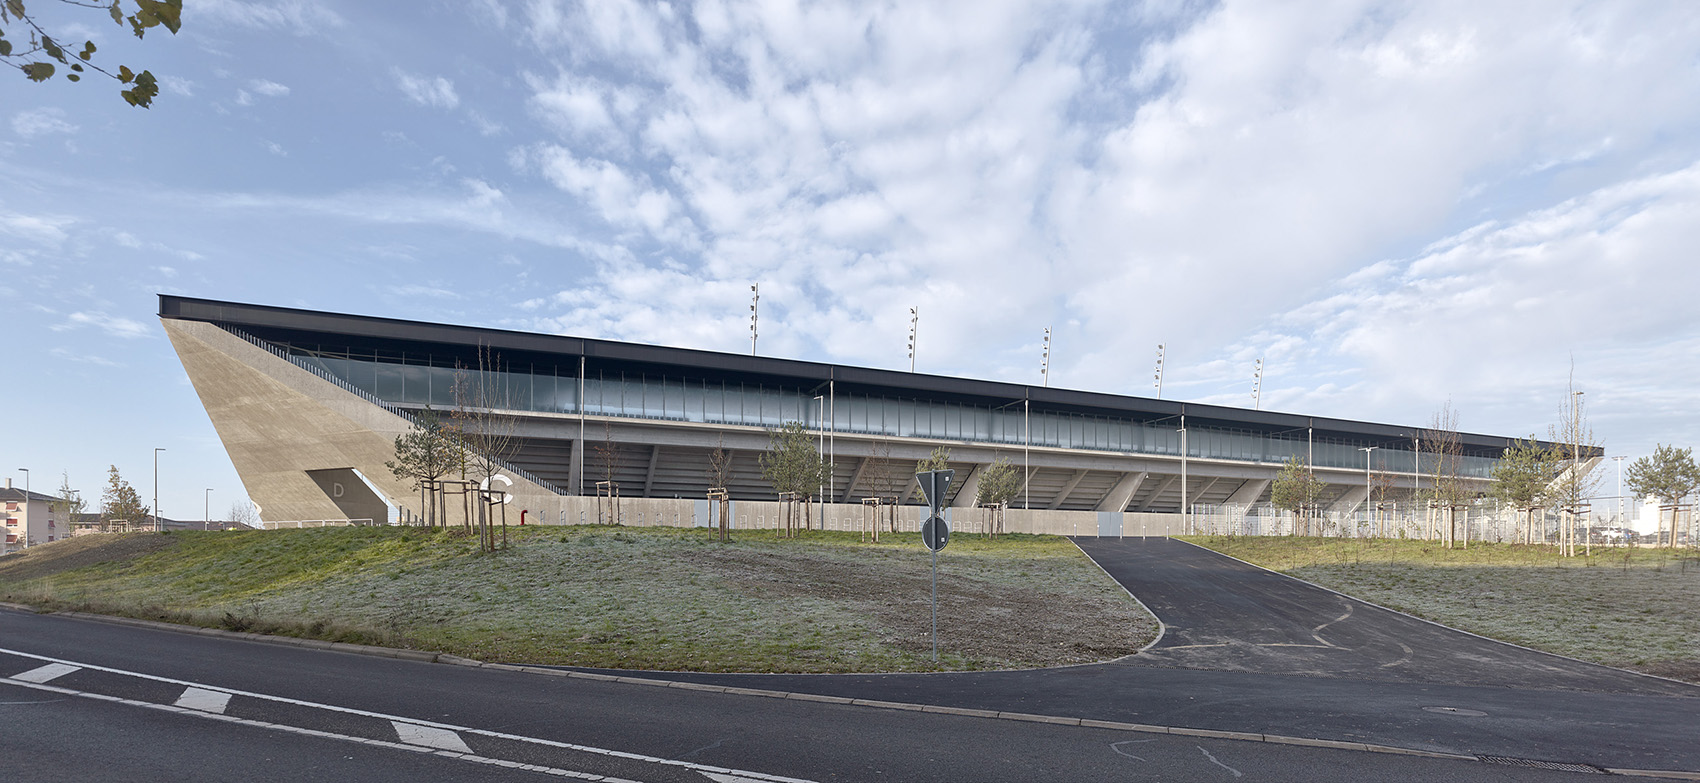 洛桑市新足球场馆，瑞士/散发宁静感的市郊体育设施-3